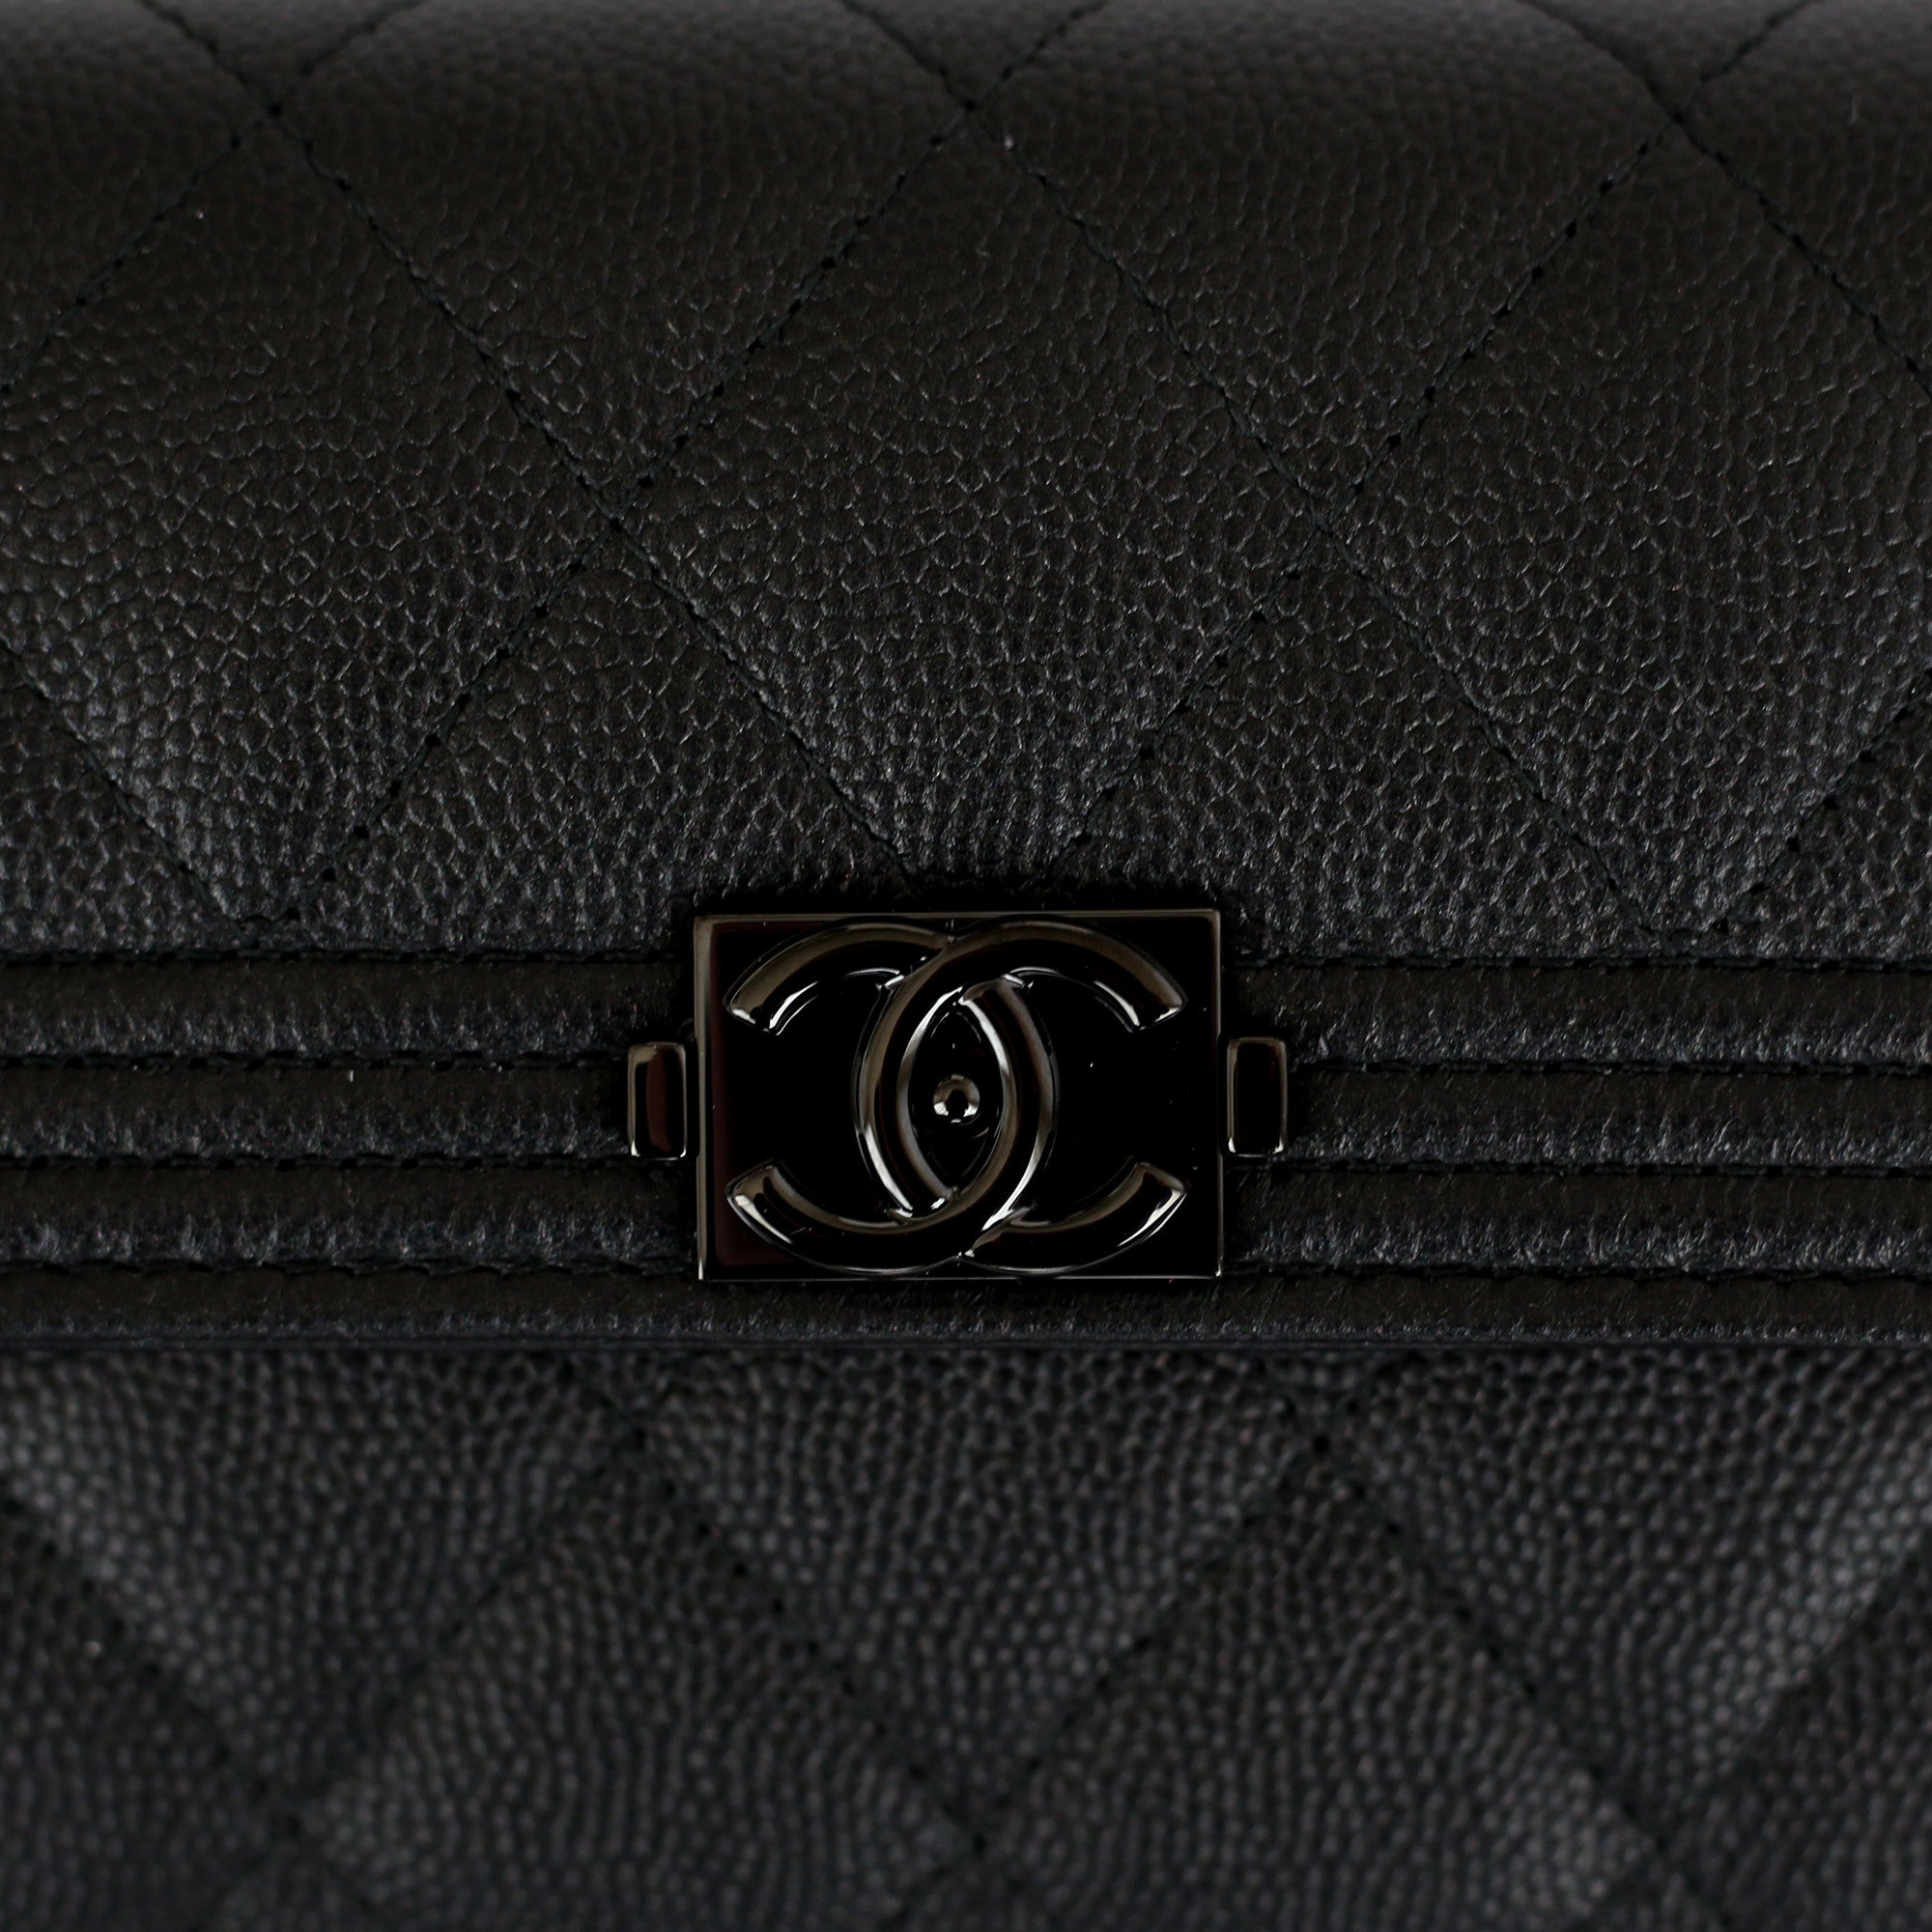 Chanel Boy Flap Long Wallet in Black Caviar AGHW